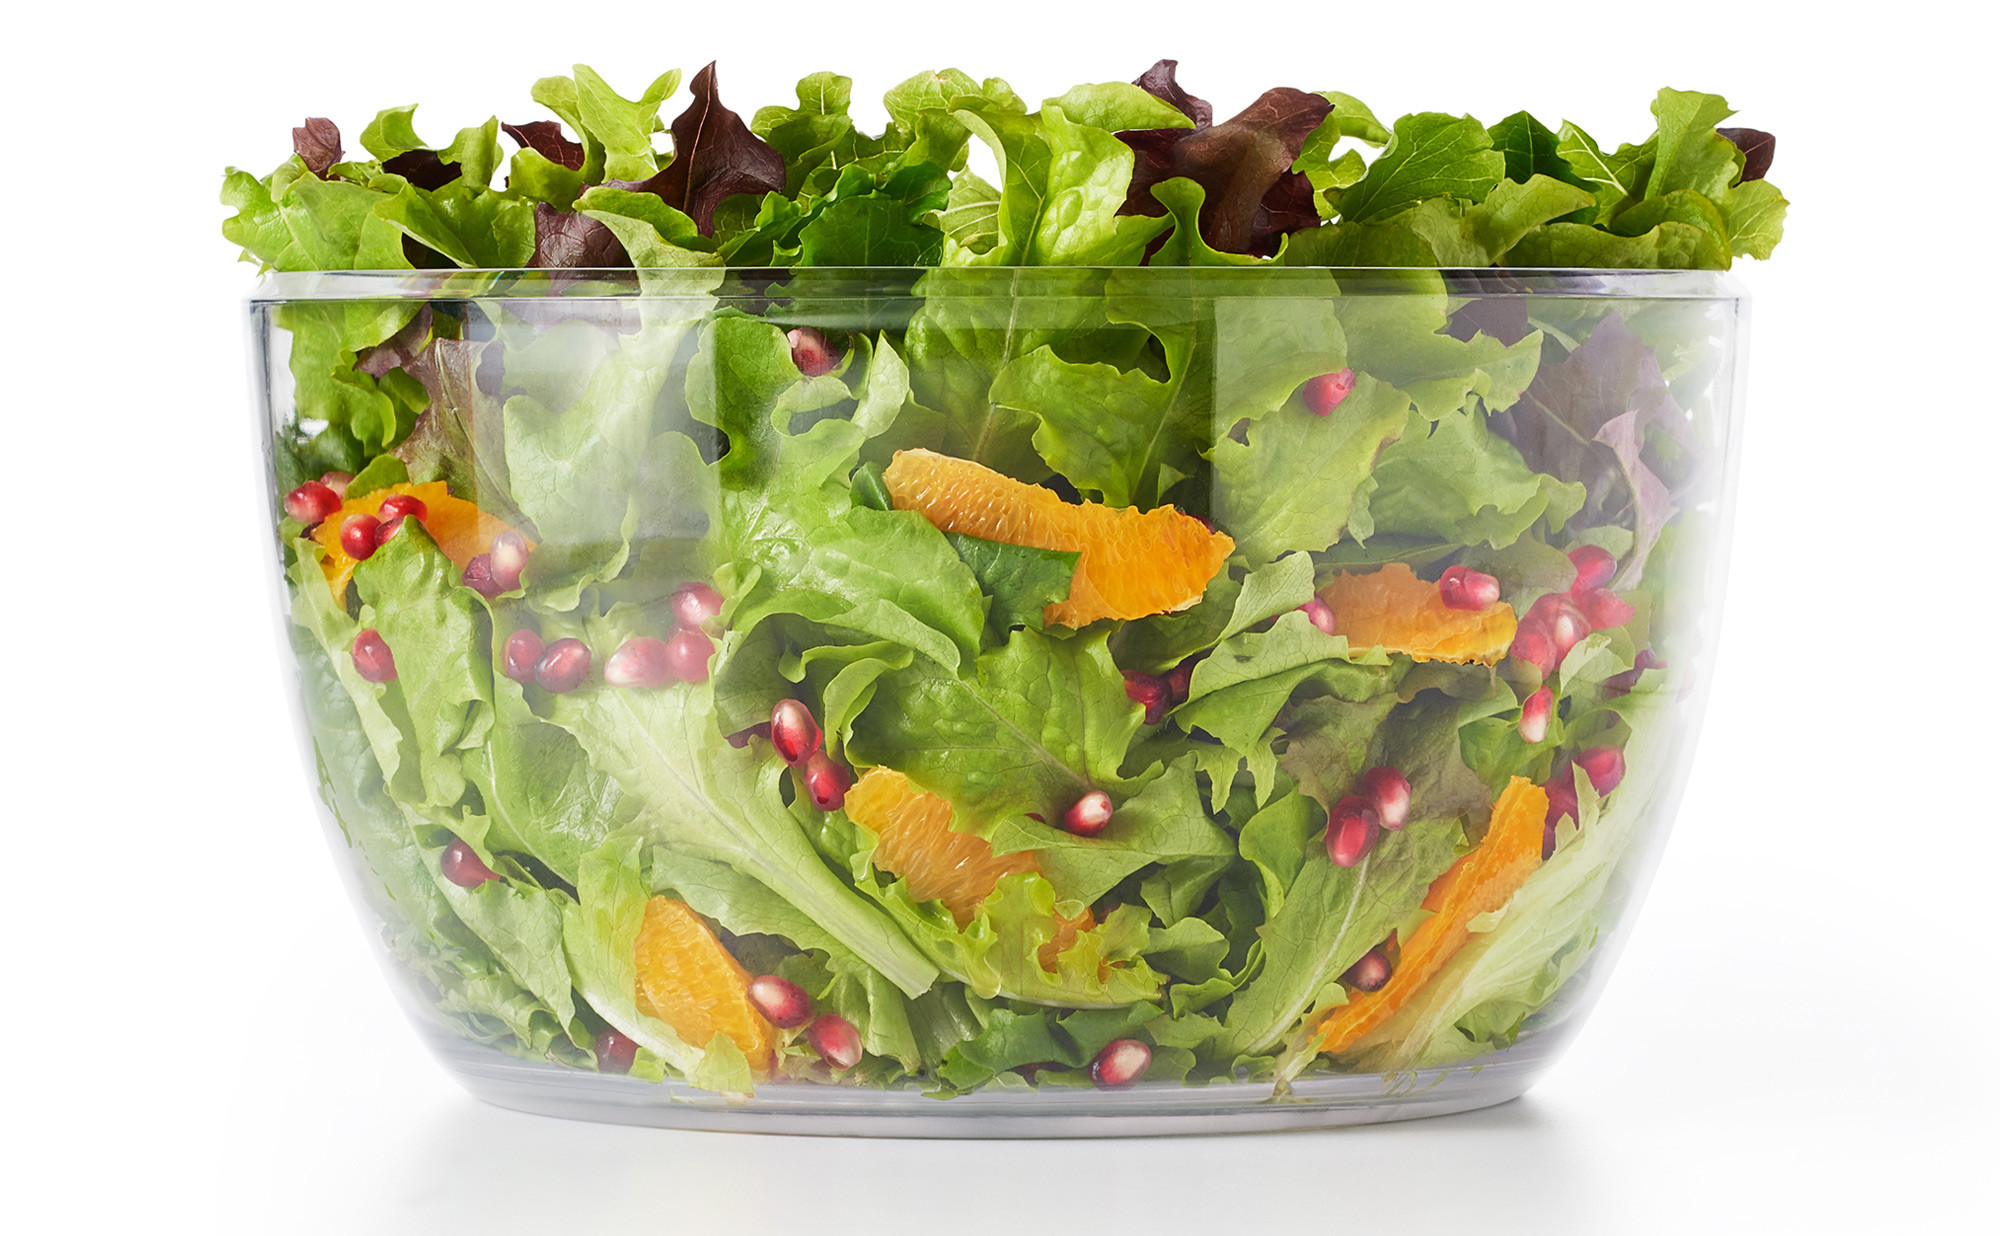 Essoreuse à salade OXO transparente - Aide technique repas - Tous ergo